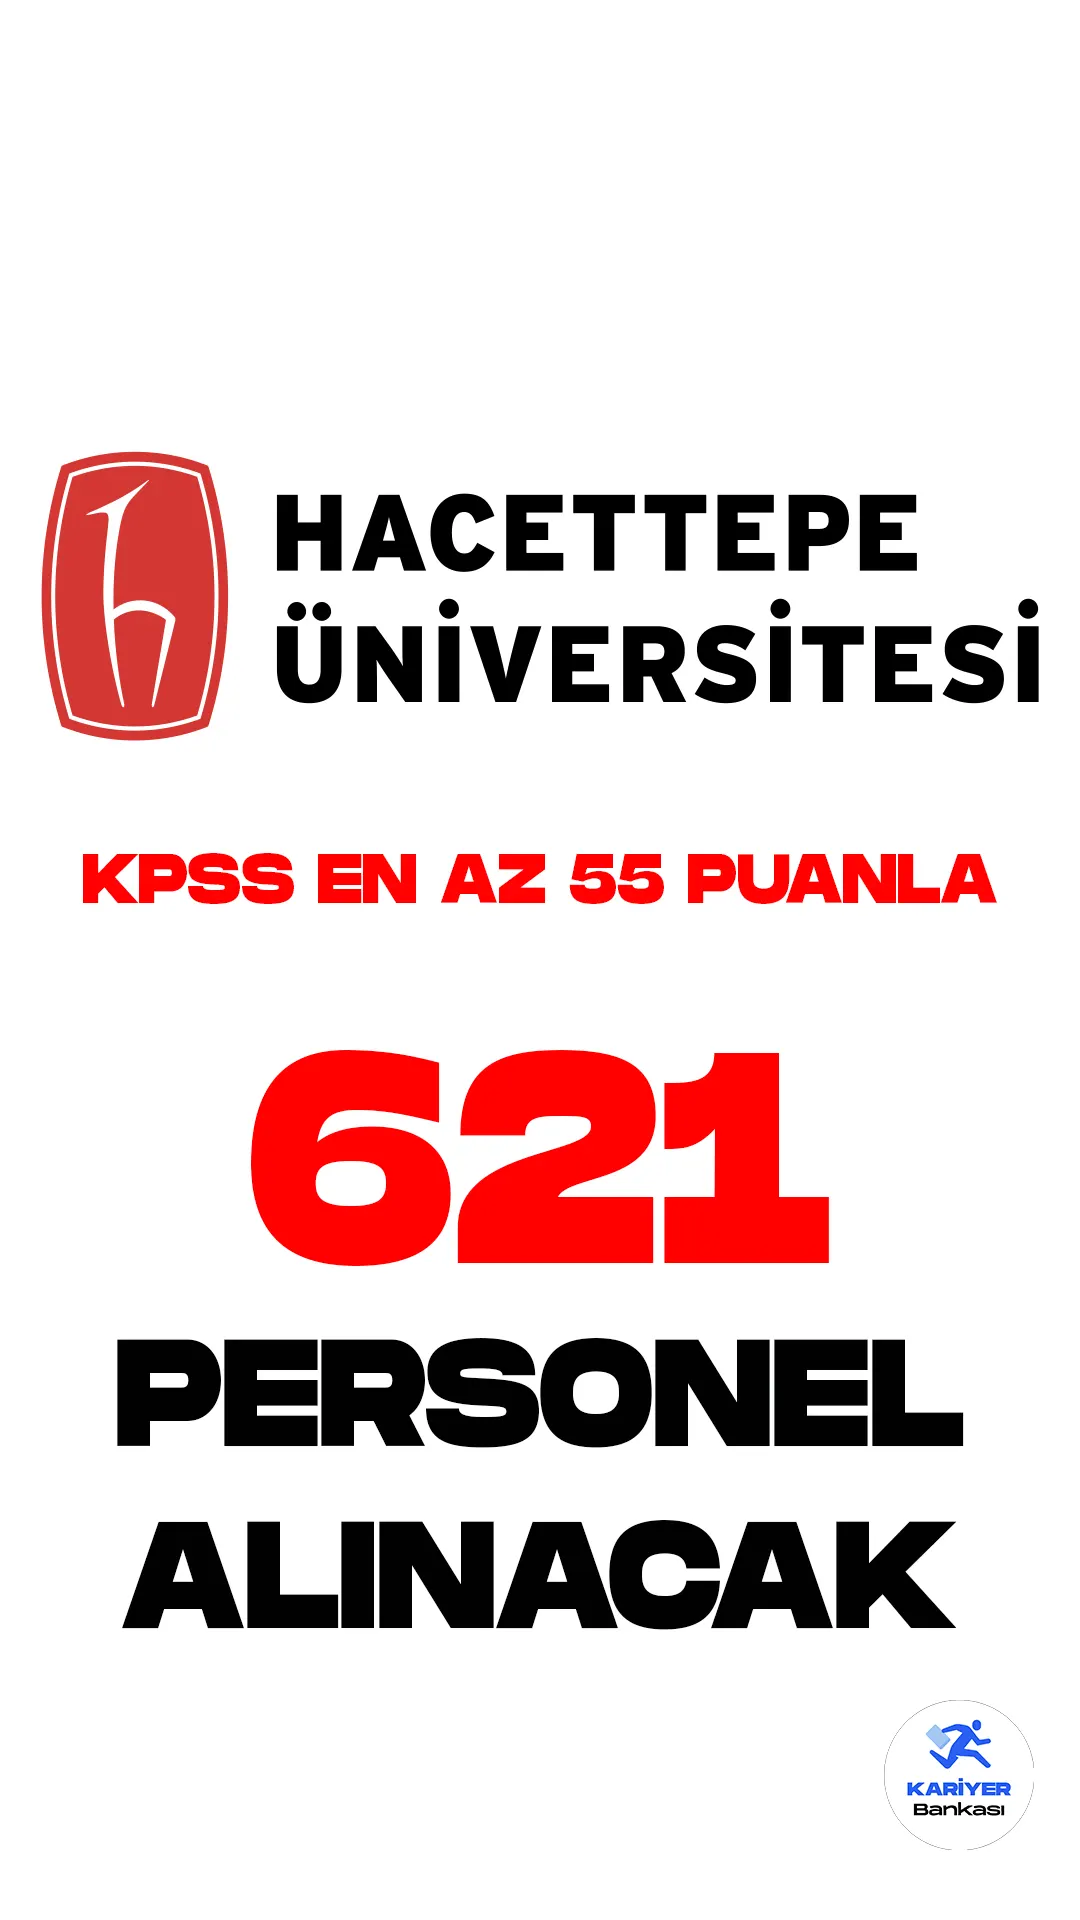 Hacettepe Üniversitesi KPSS en az 55 puanla personel alımı yapacak.